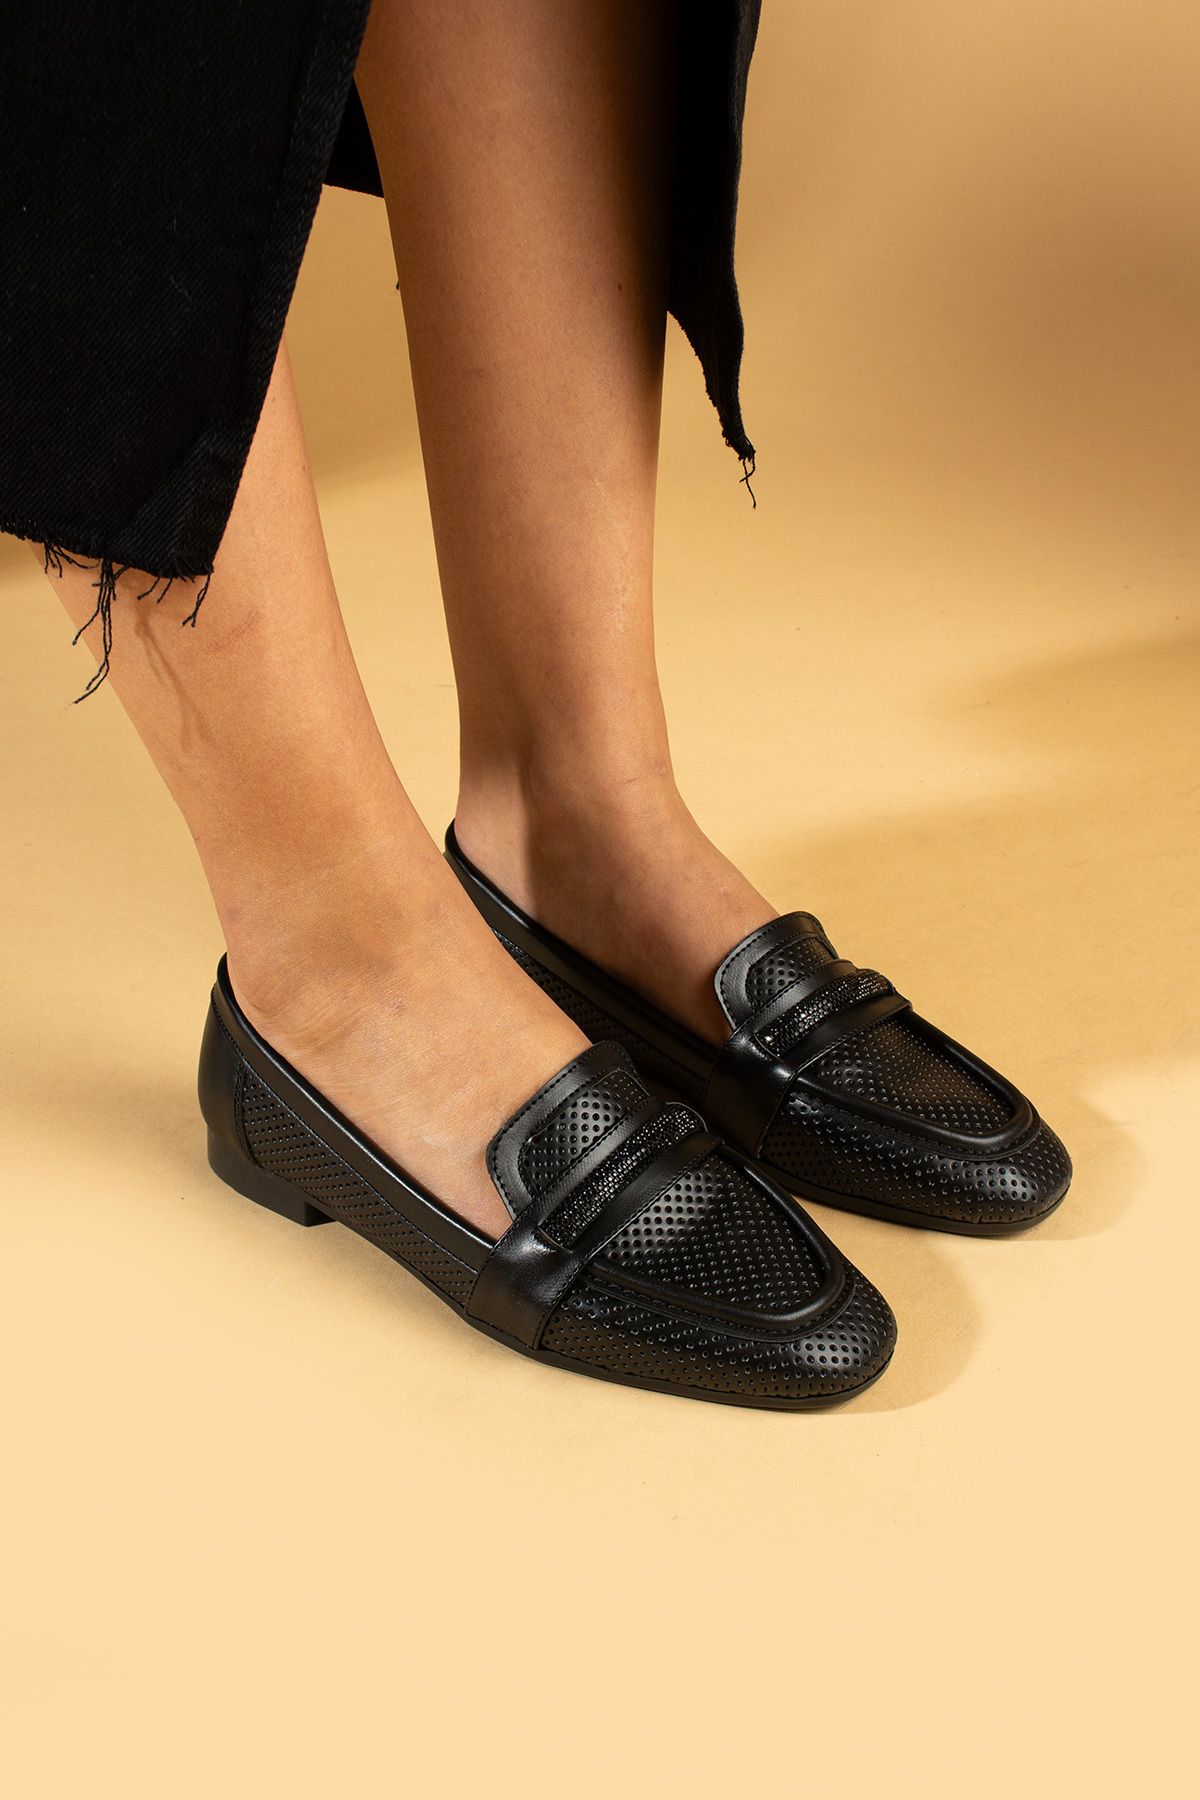 Pembe Potin Kadın Babet Siyah Taş Tokalı Hafif Rahat Taban Şık Günlük Ayakkabı